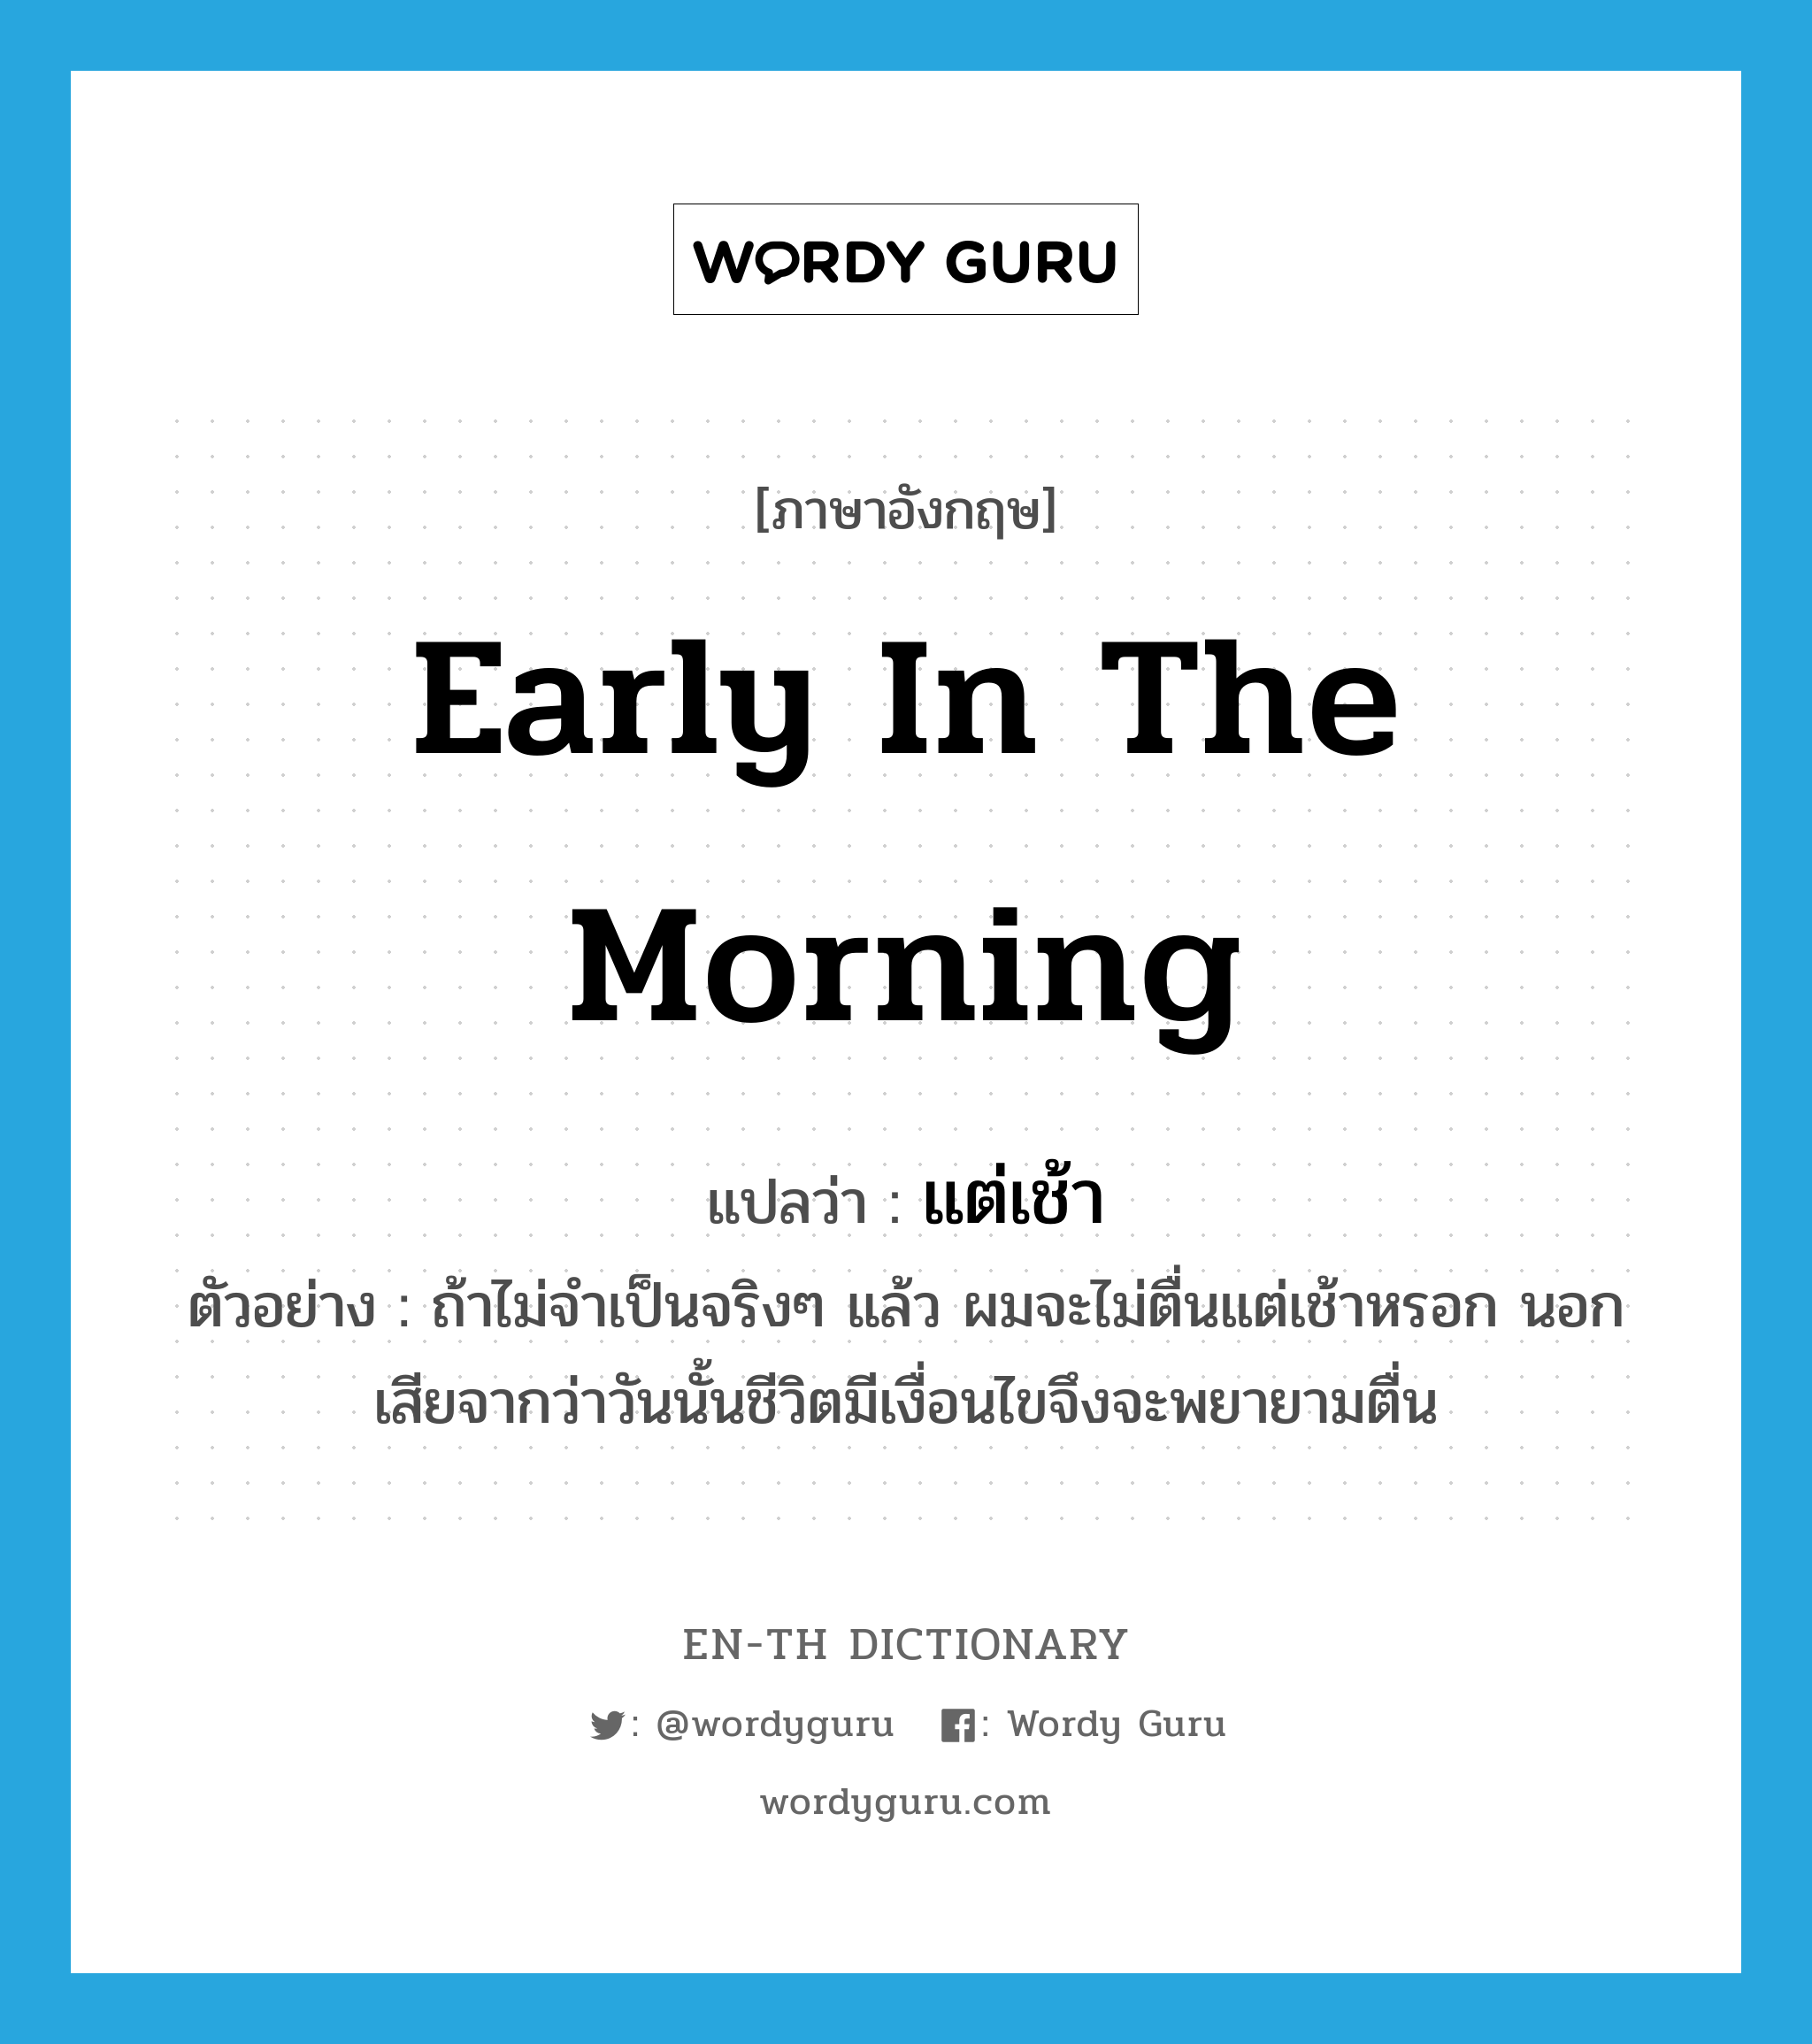 แต่เช้า ภาษาอังกฤษ?, คำศัพท์ภาษาอังกฤษ แต่เช้า แปลว่า early in the morning ประเภท ADV ตัวอย่าง ถ้าไม่จำเป็นจริงๆ แล้ว ผมจะไม่ตื่นแต่เช้าหรอก นอกเสียจากว่าวันนั้นชีวิตมีเงื่อนไขจึงจะพยายามตื่น หมวด ADV